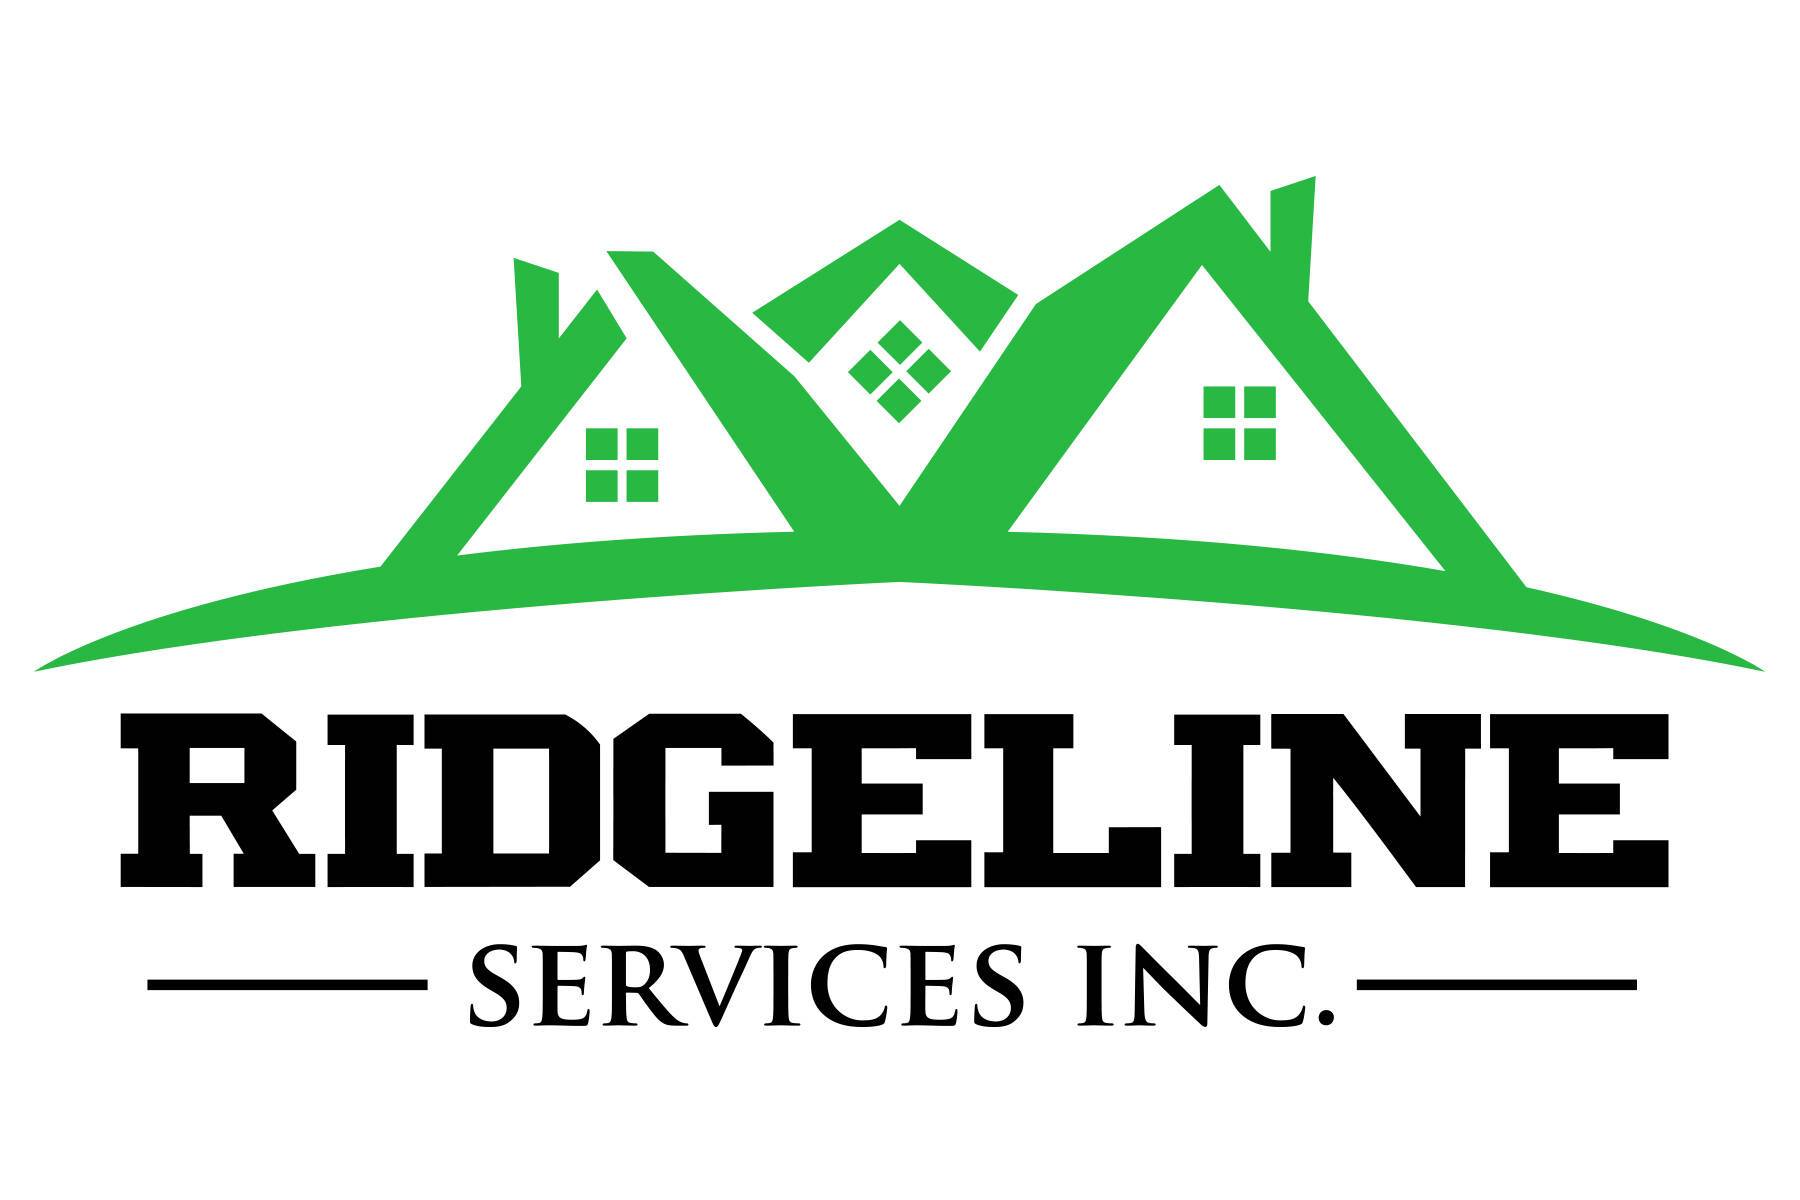 Ridgeline Services Inc.